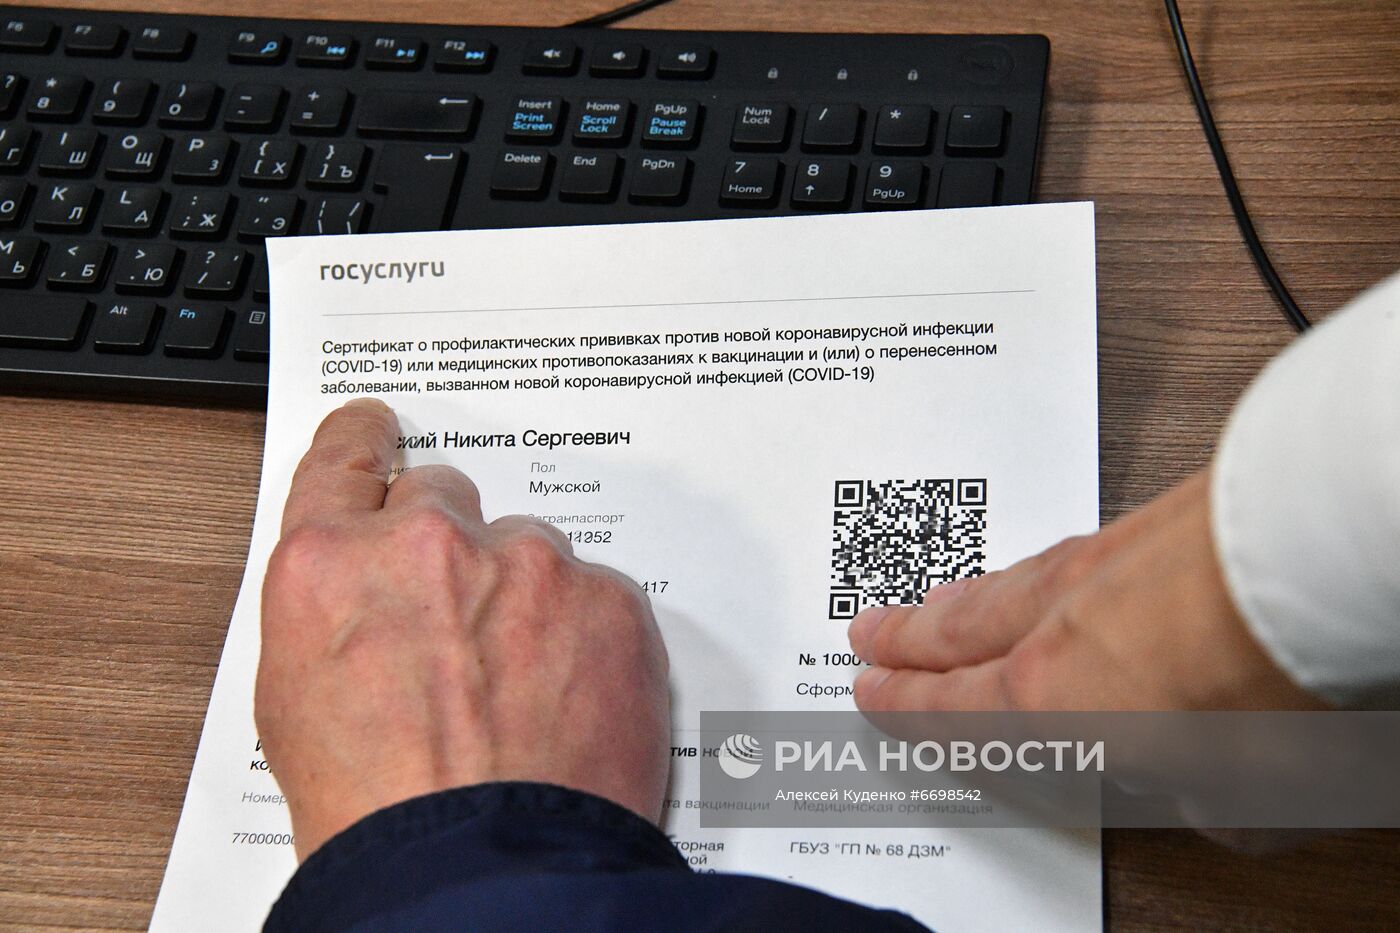 В МФЦ начали распечатывать бумажные сертификаты с QR-кодом